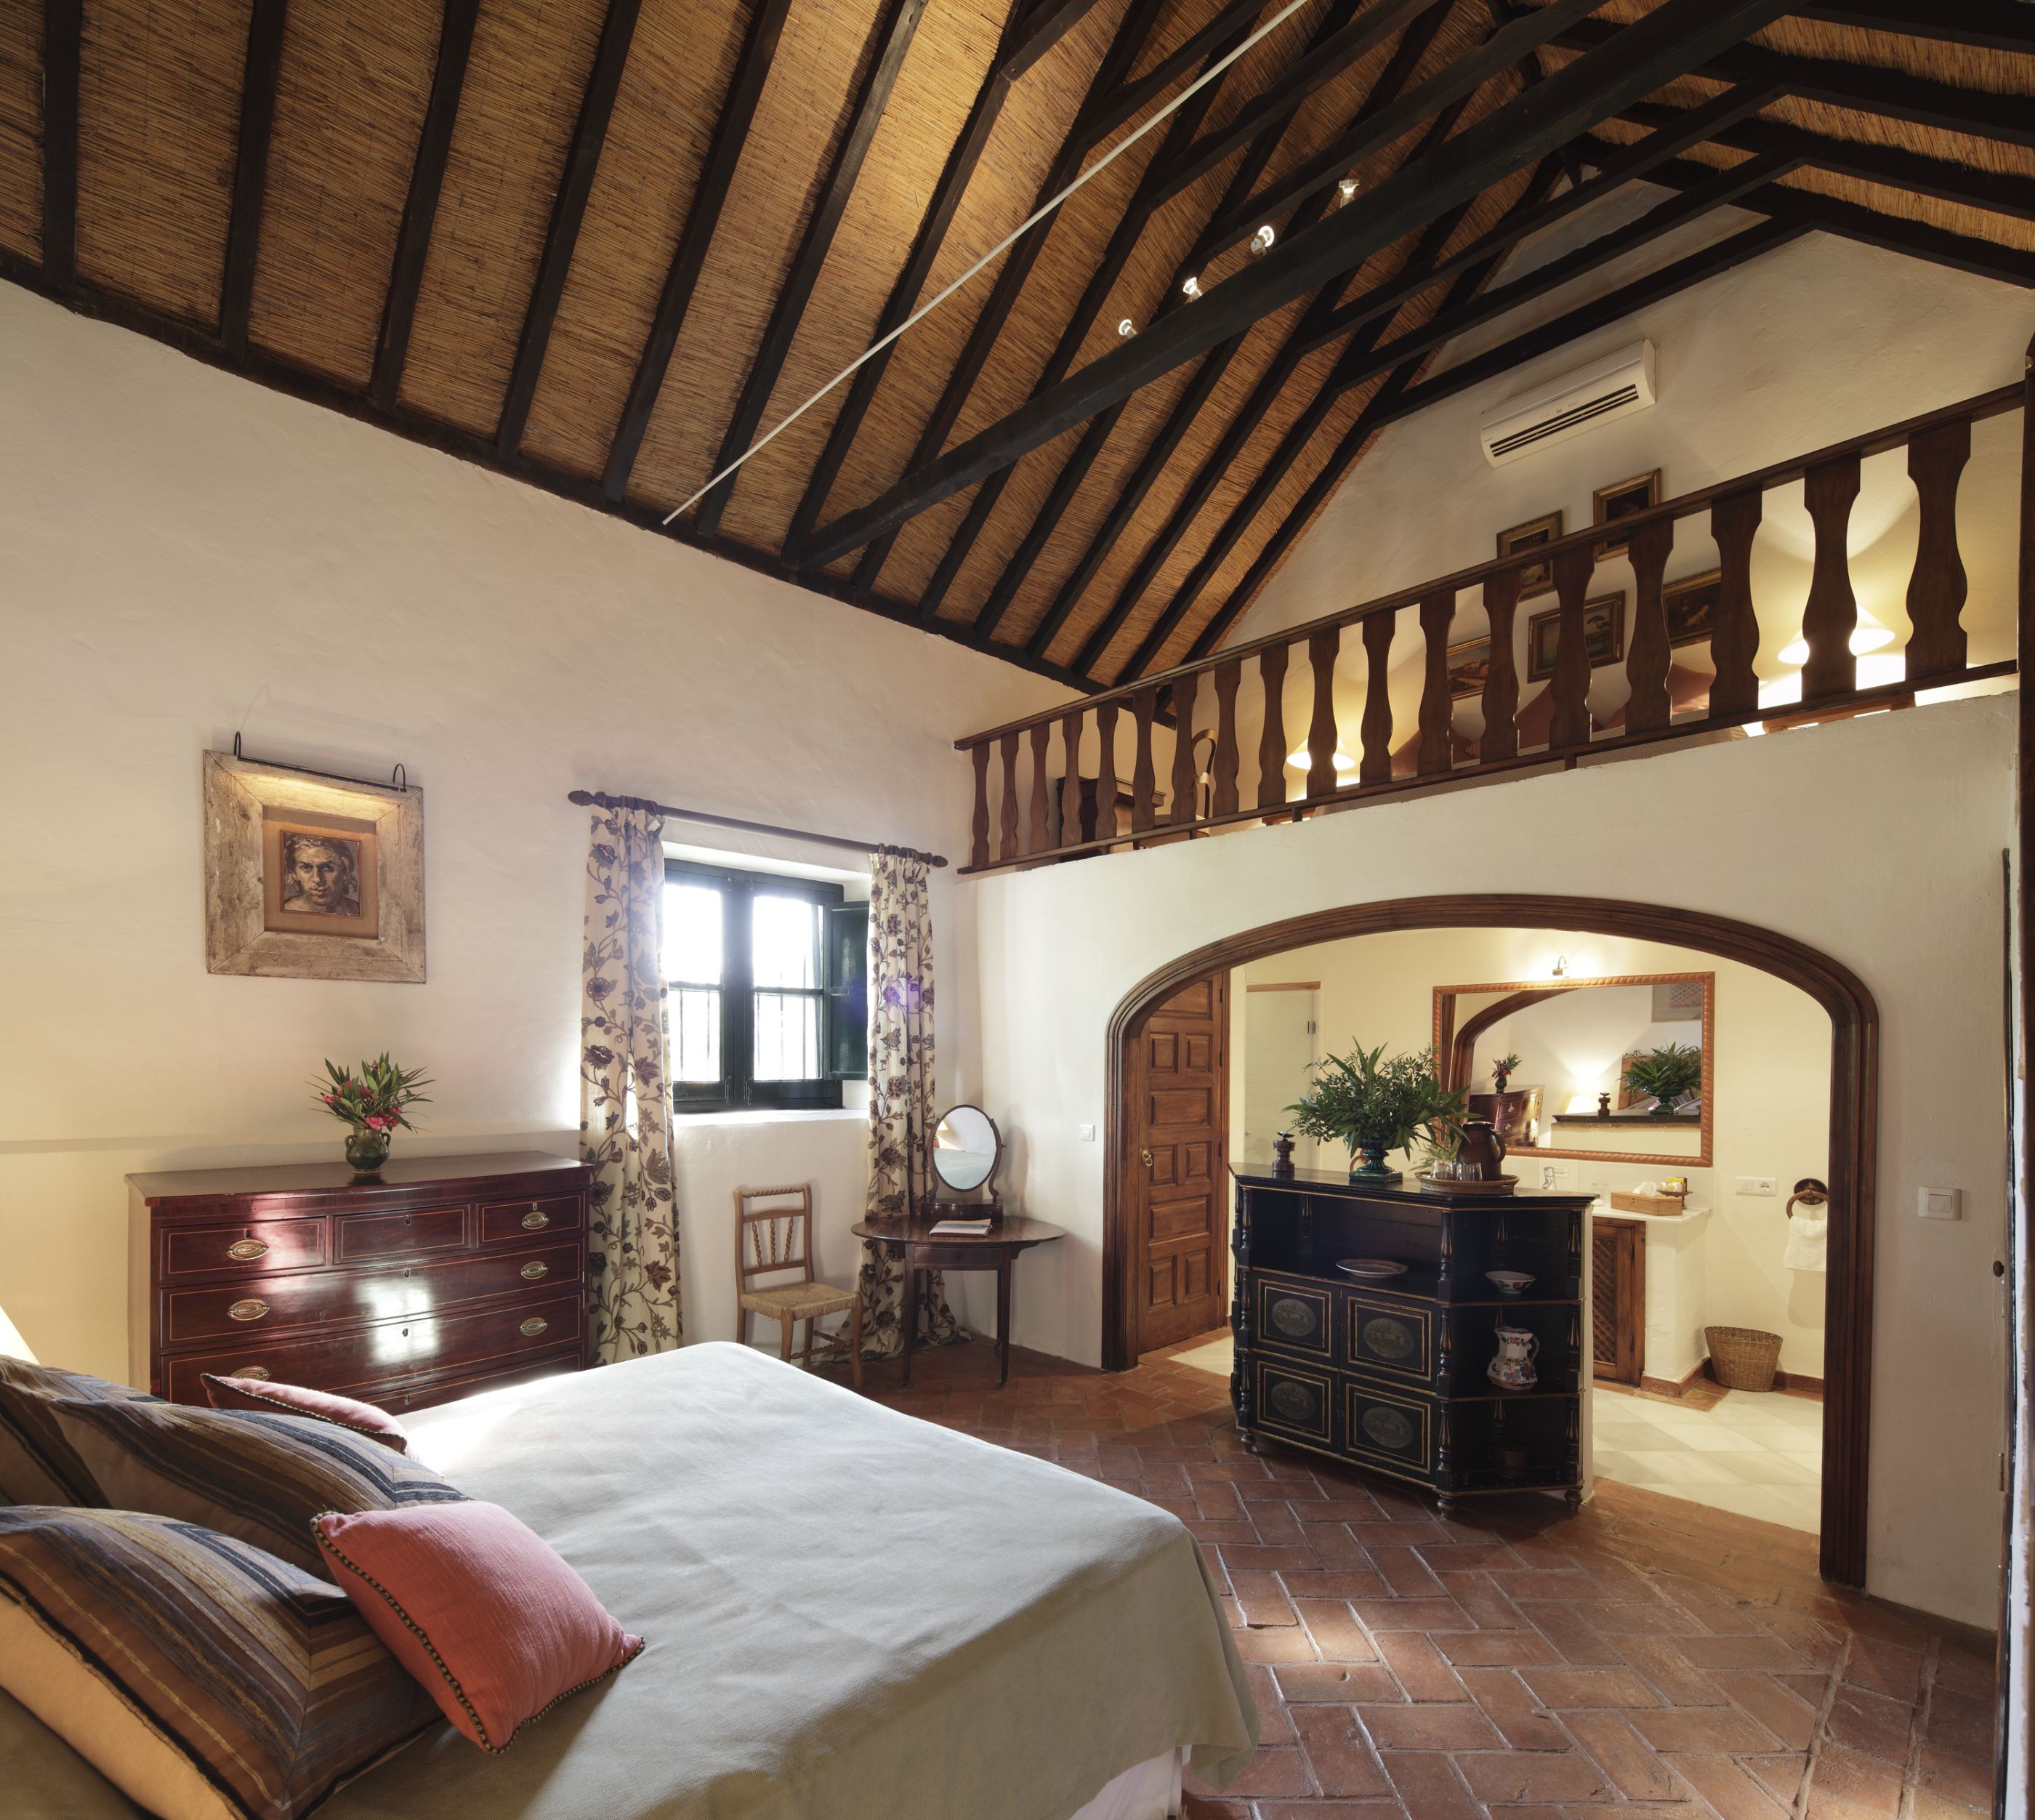 The deluxe bedroom in Hacienda de San Rafael, Spain